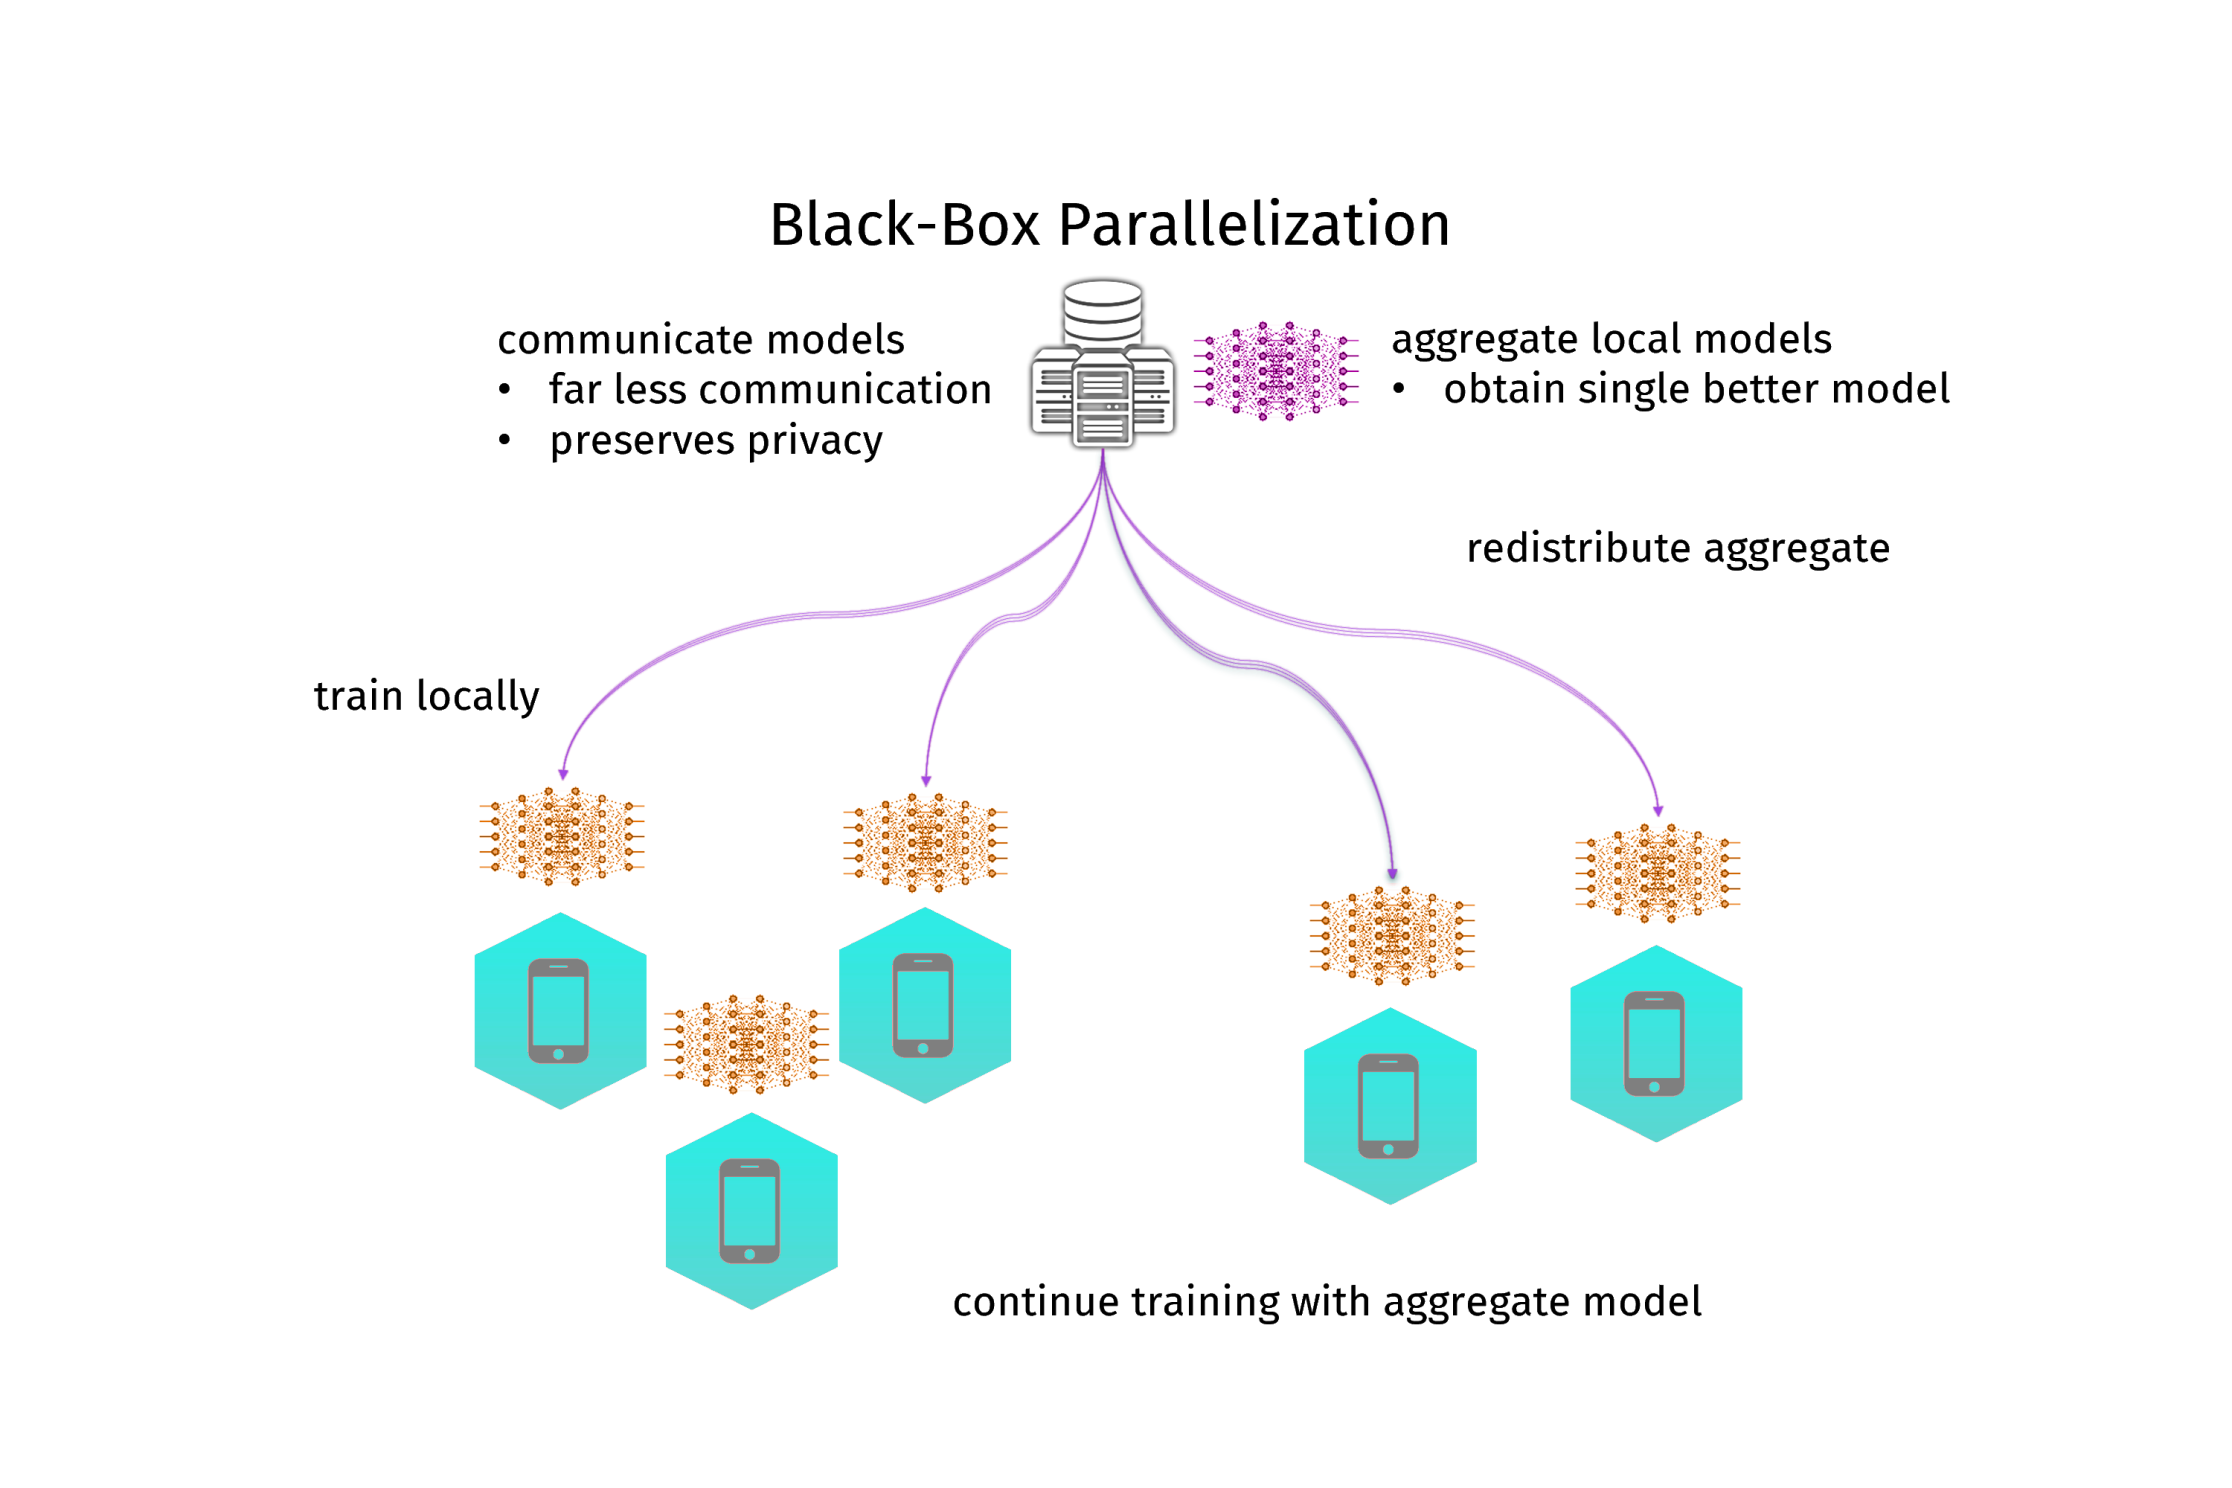 Schema of black-box parallelization